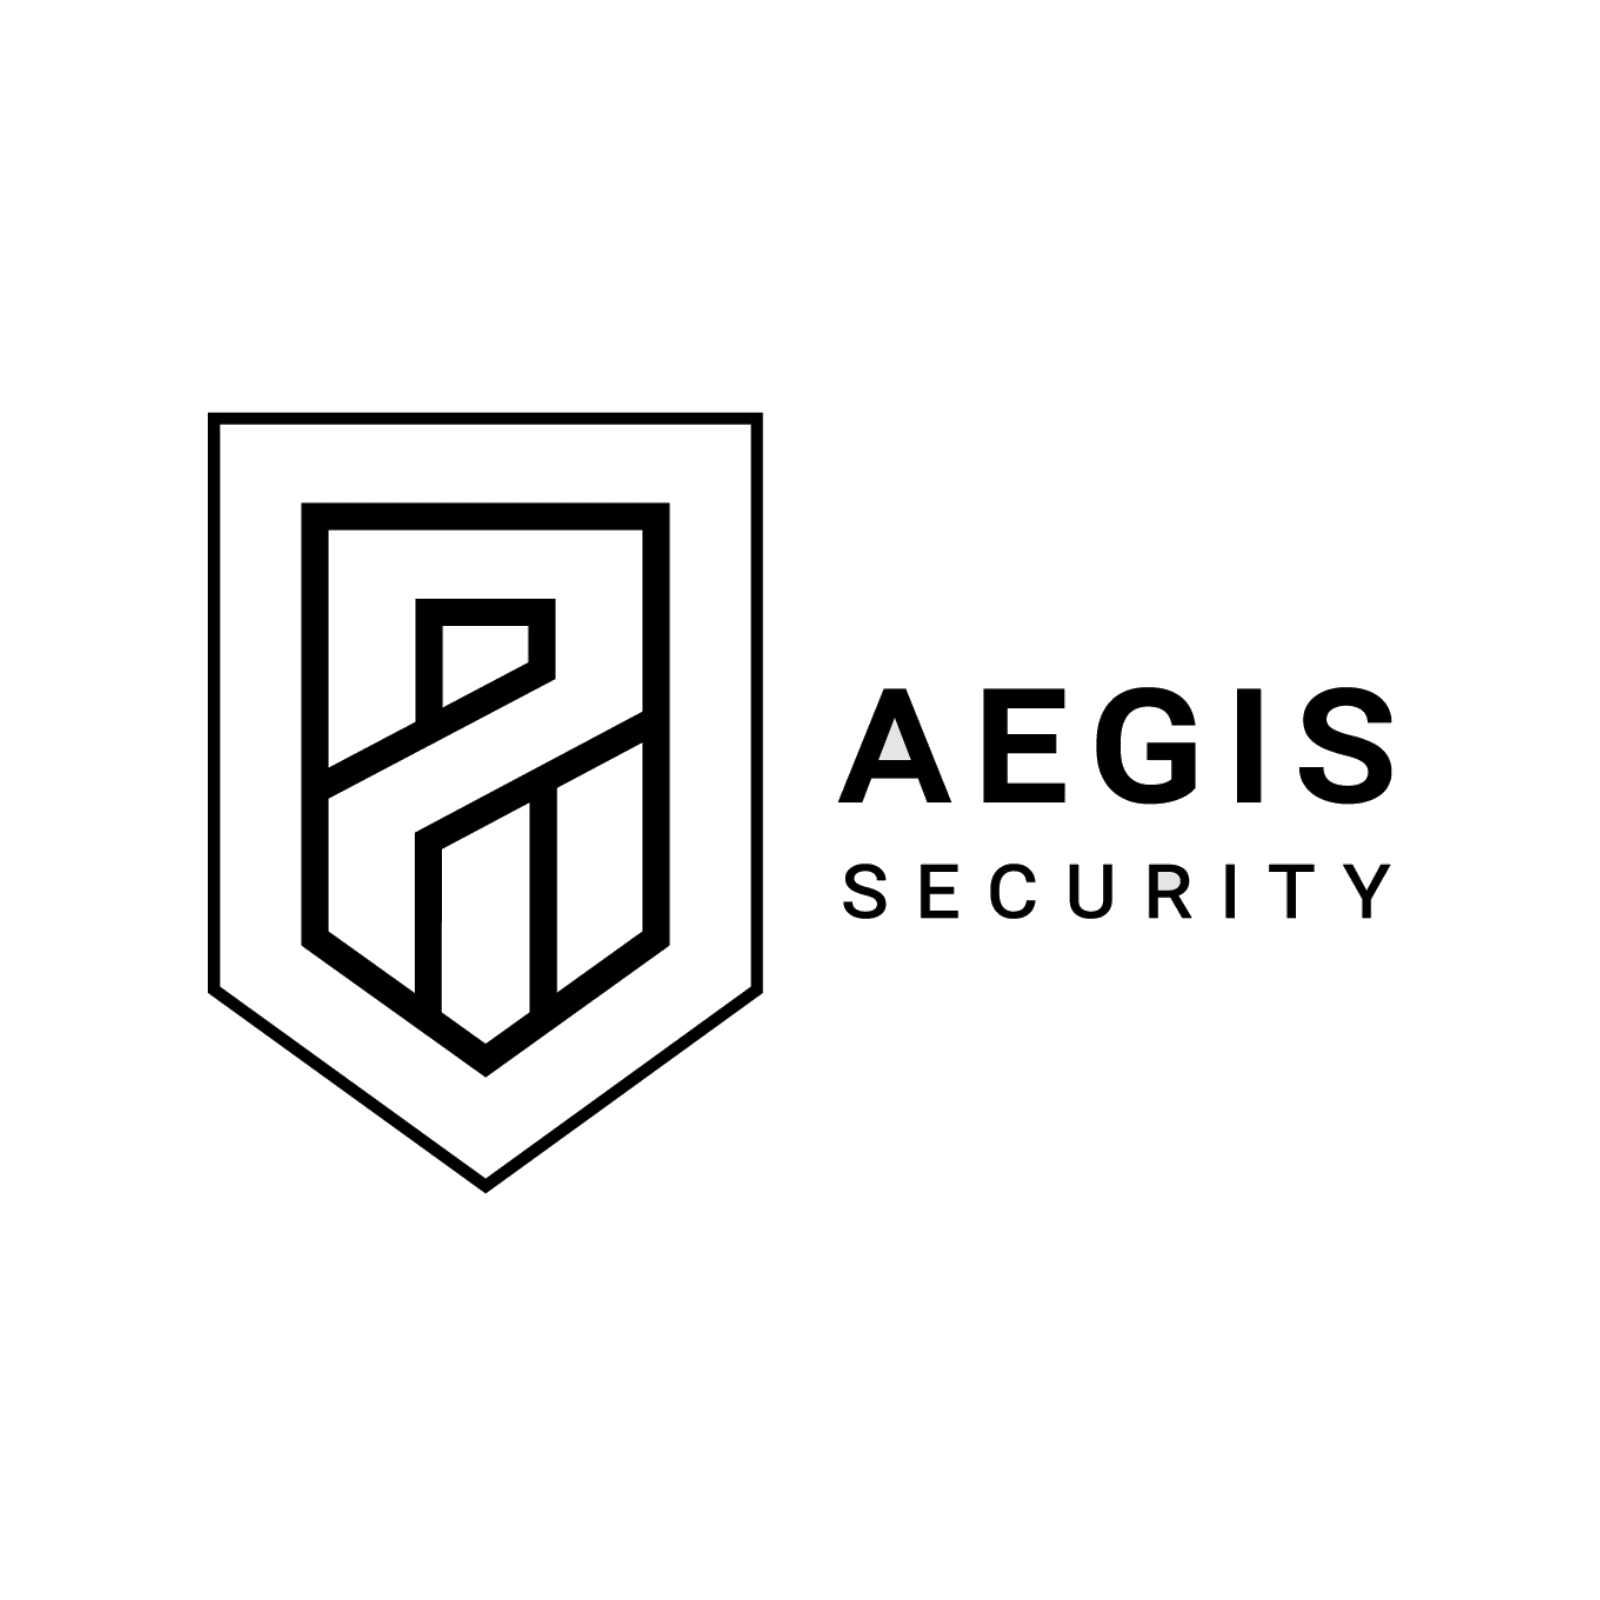 aegis security